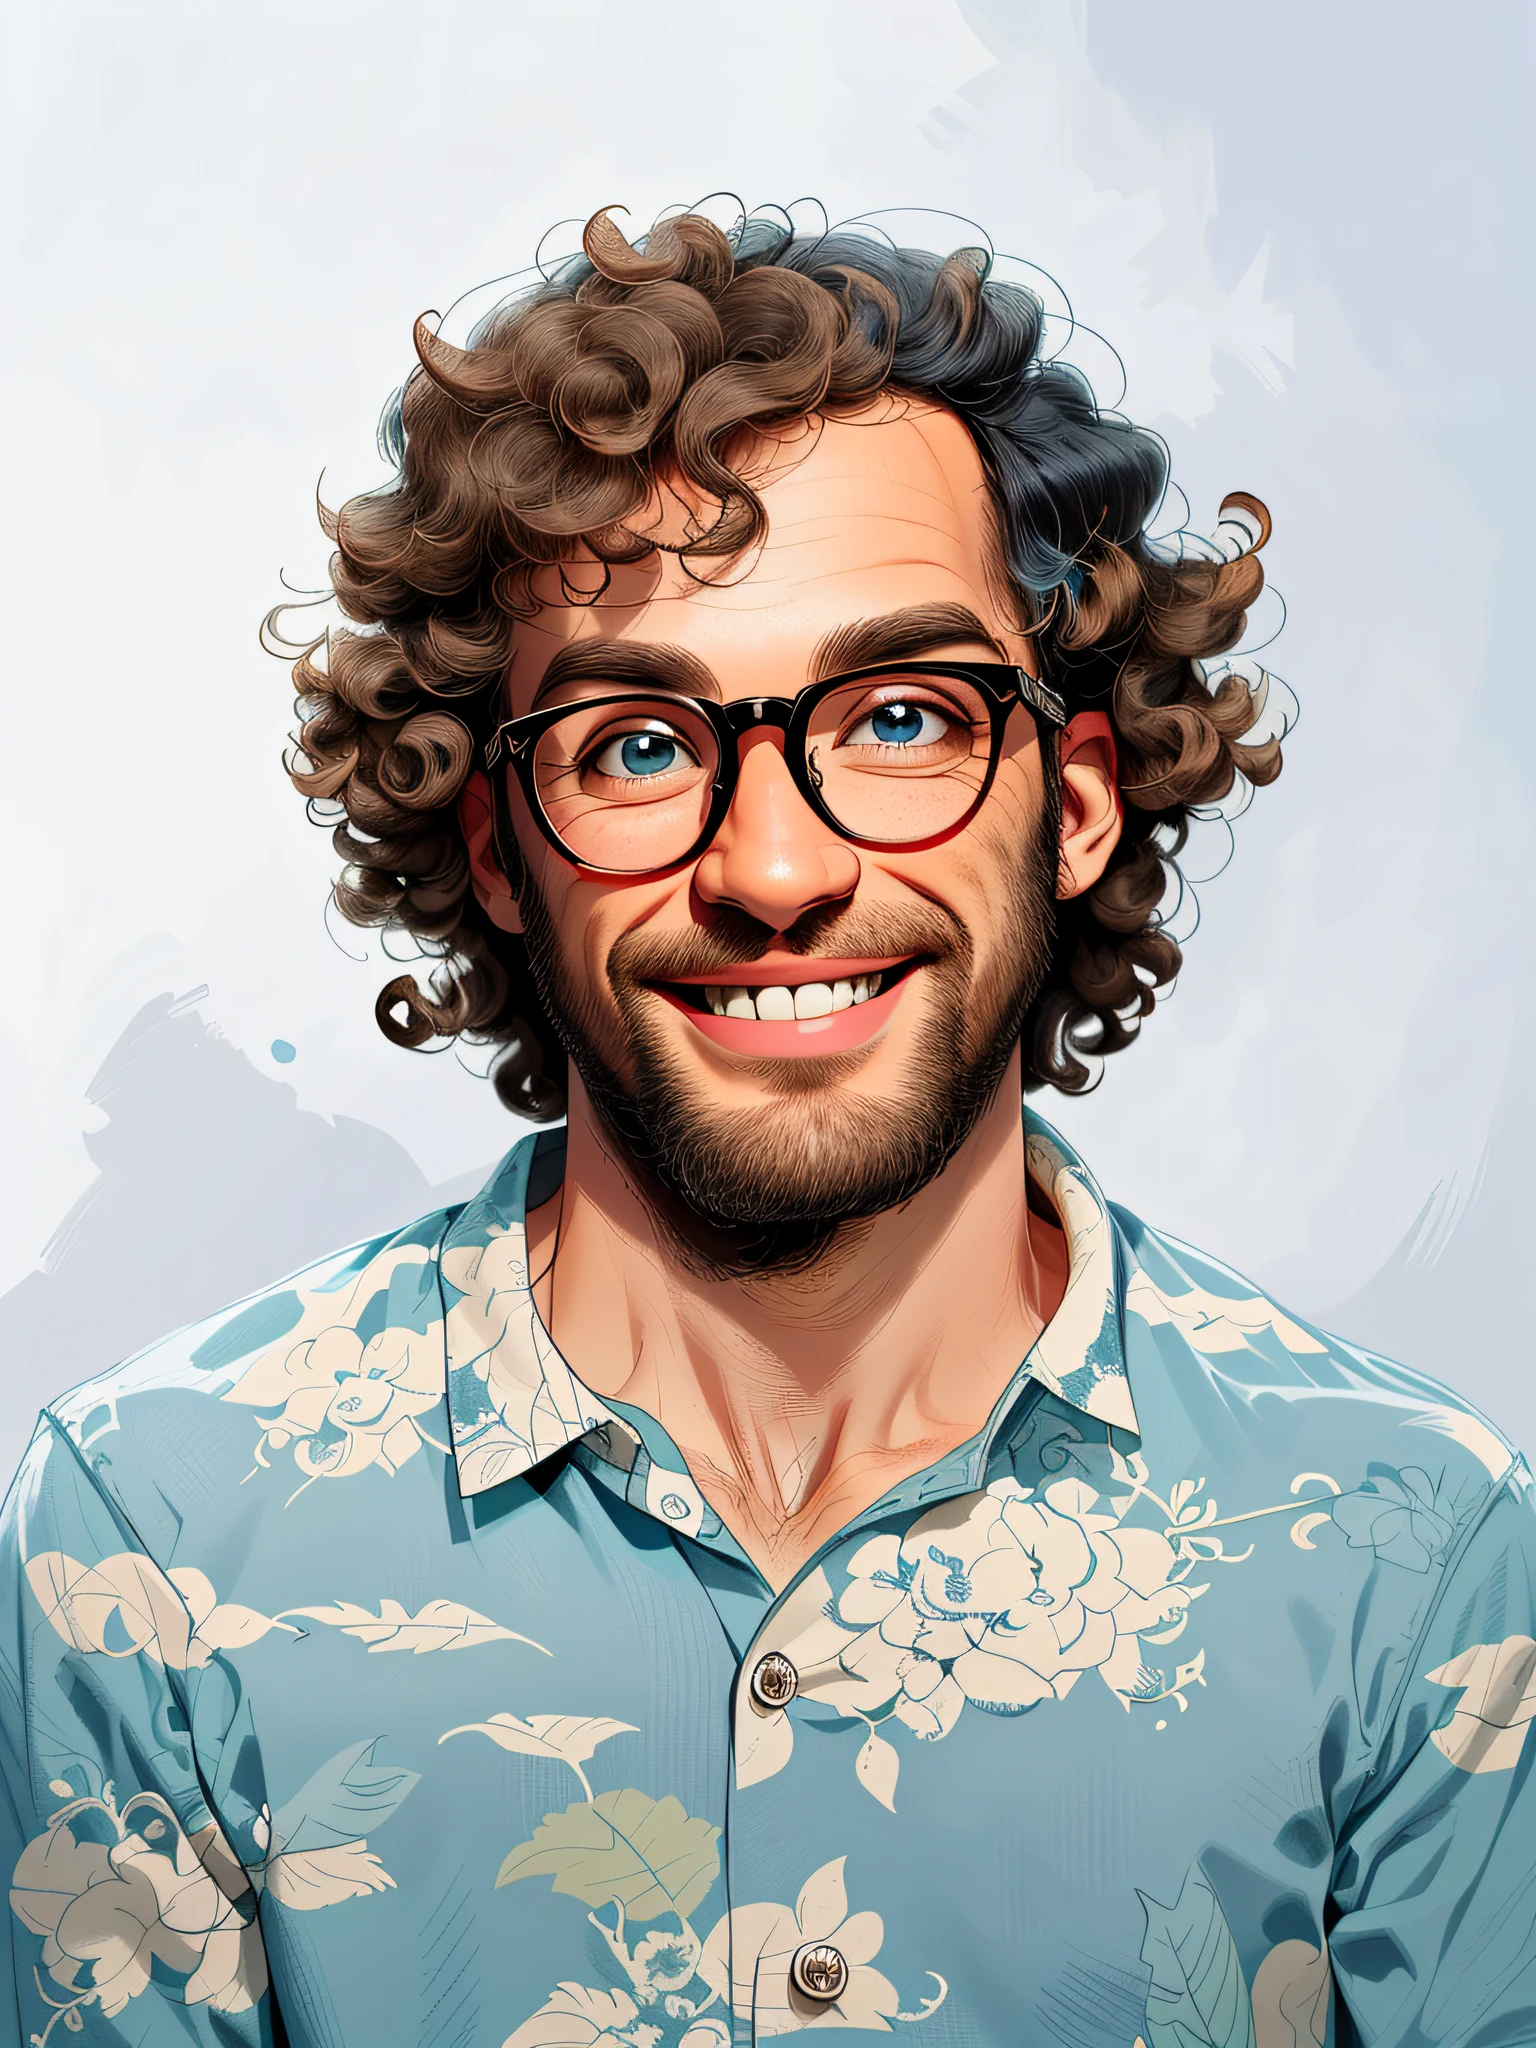 HD, (meilleur détail), (meilleure qualité), Des traits du visage minutieux, Homme souriant aux cheveux bouclés en chemise bleue et lunettes, bidimensionnel, dessin animé